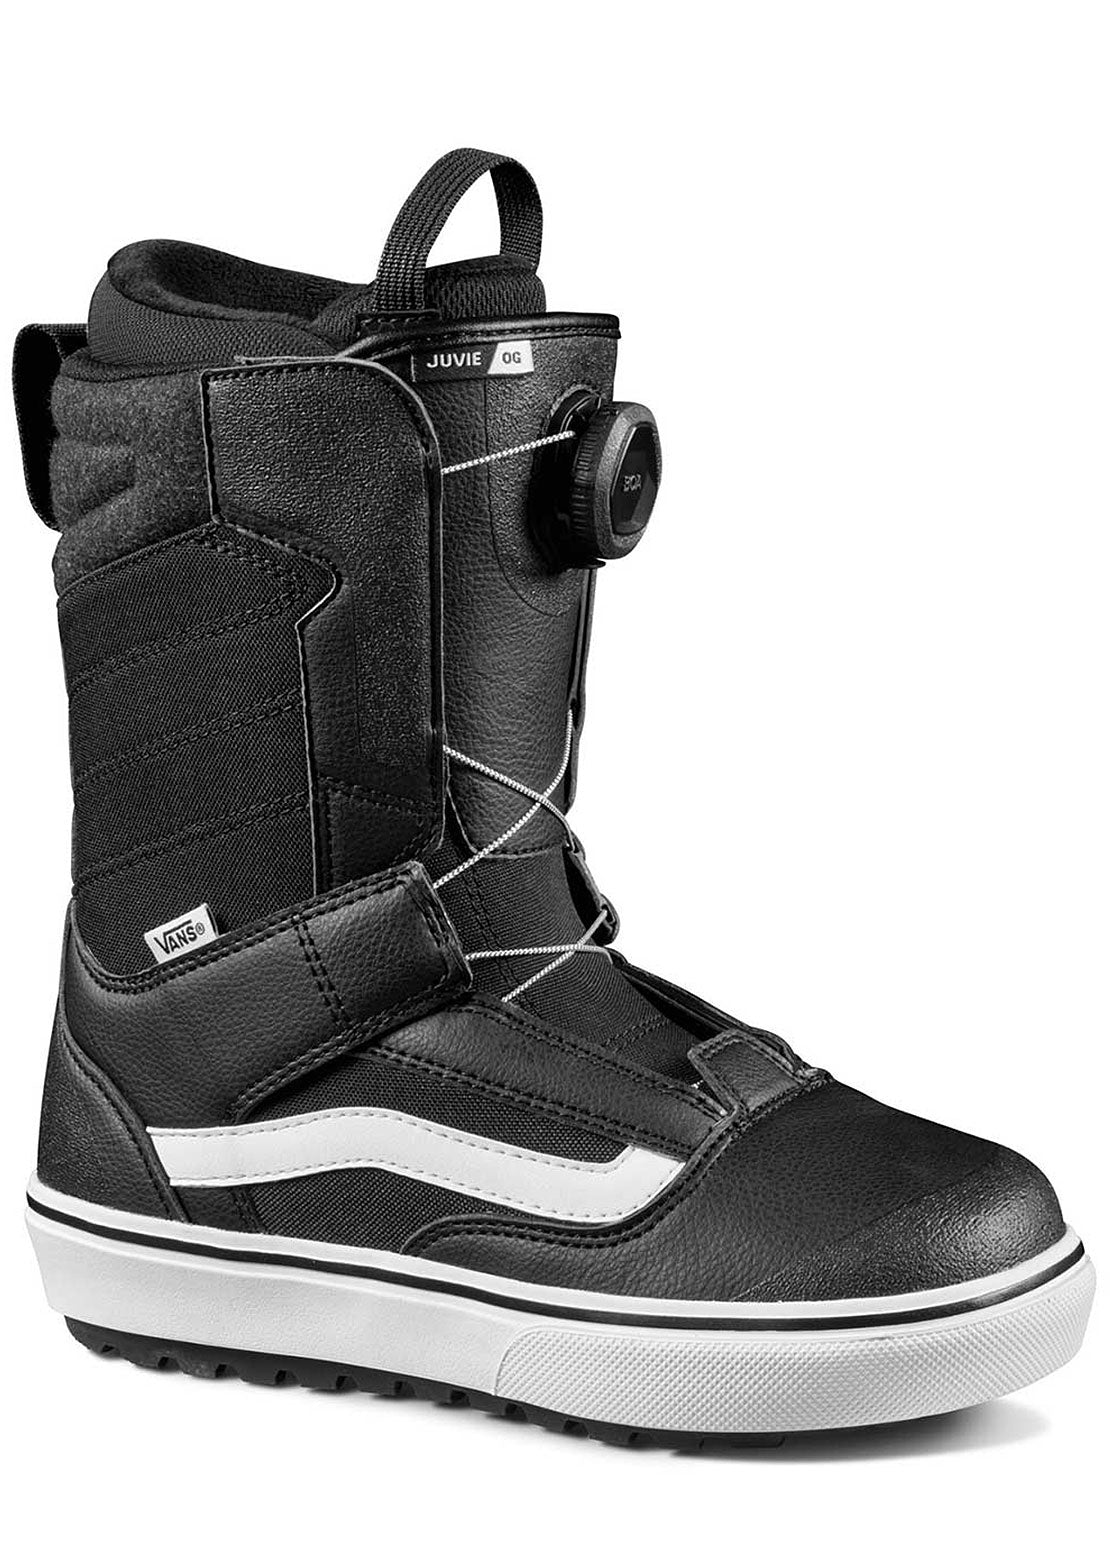 Vans Junior Juvie OG Snowboard Boots Black/White